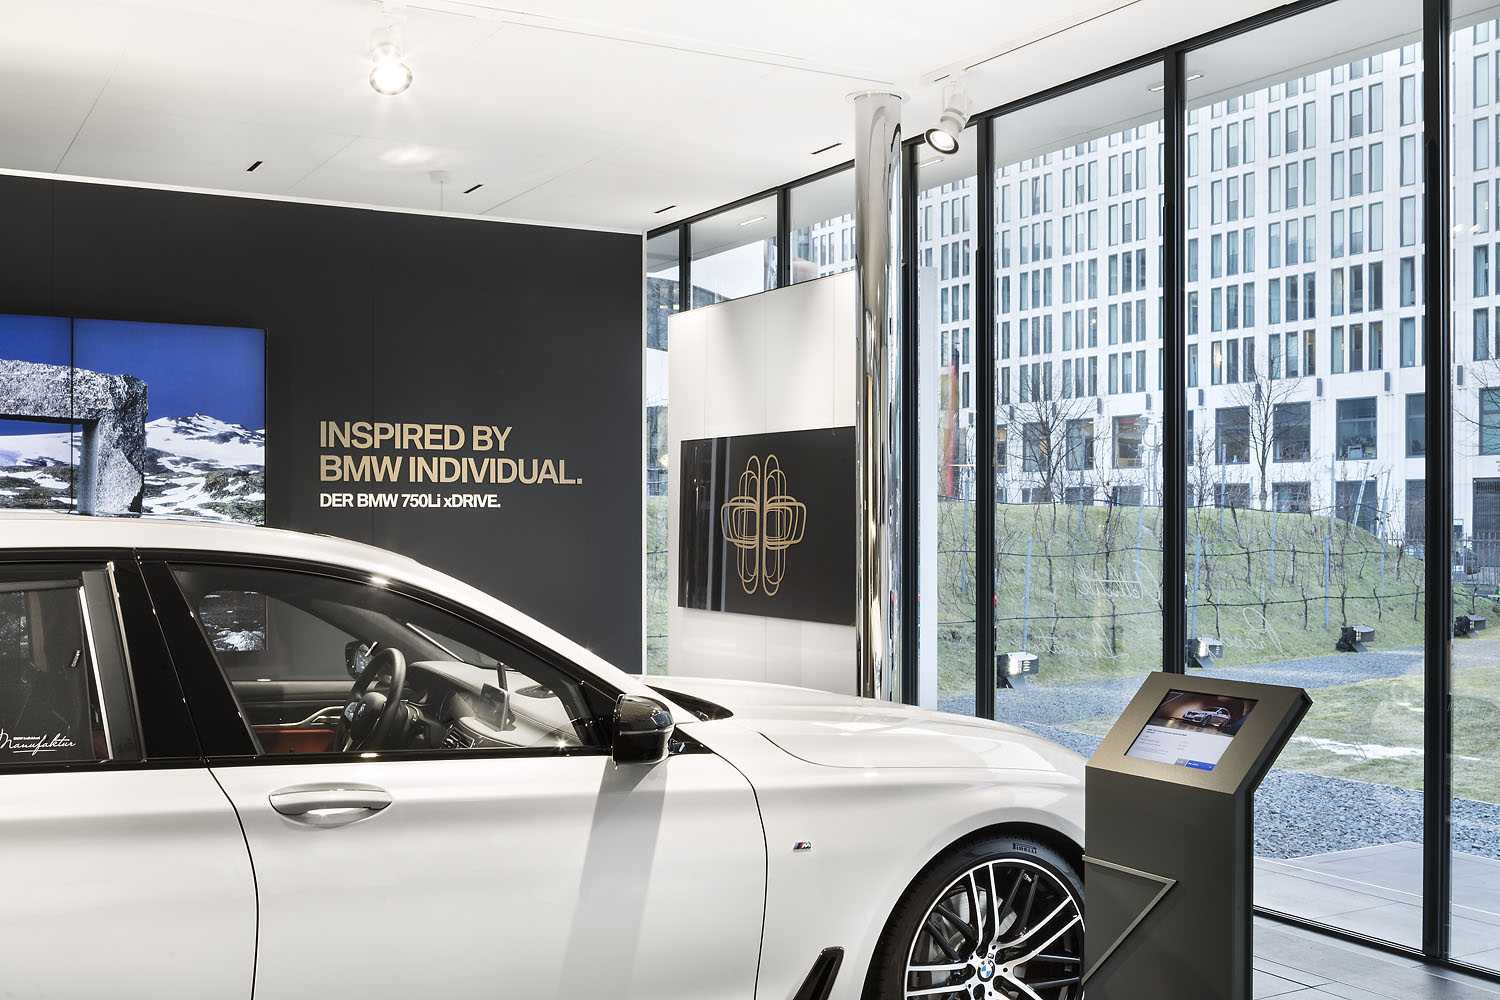 BMW Luxury Excellence Pavillon feiert Premiere während der Berlinale 2017. Pop-up Showroom für Innovation und Ästhetik in den Ministergärten in Berlin. (02/2017)